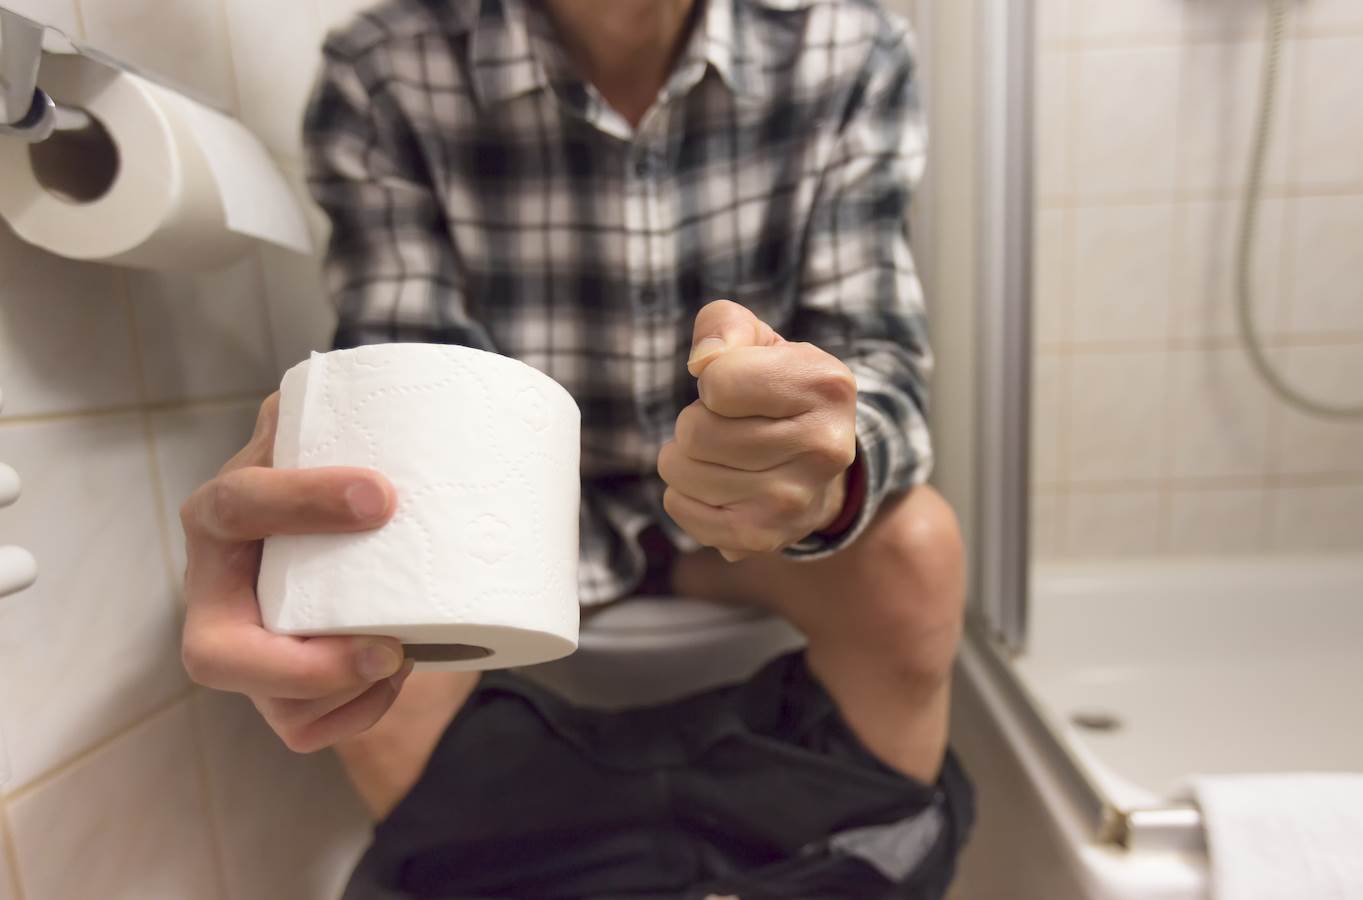  STALNO IDETE U WC, ALI IMATE OSEĆAJ DA NISTE SVE "IZBACILI"? Ako osećate i bol u jednoj polovini stomaka, nije dobro! 